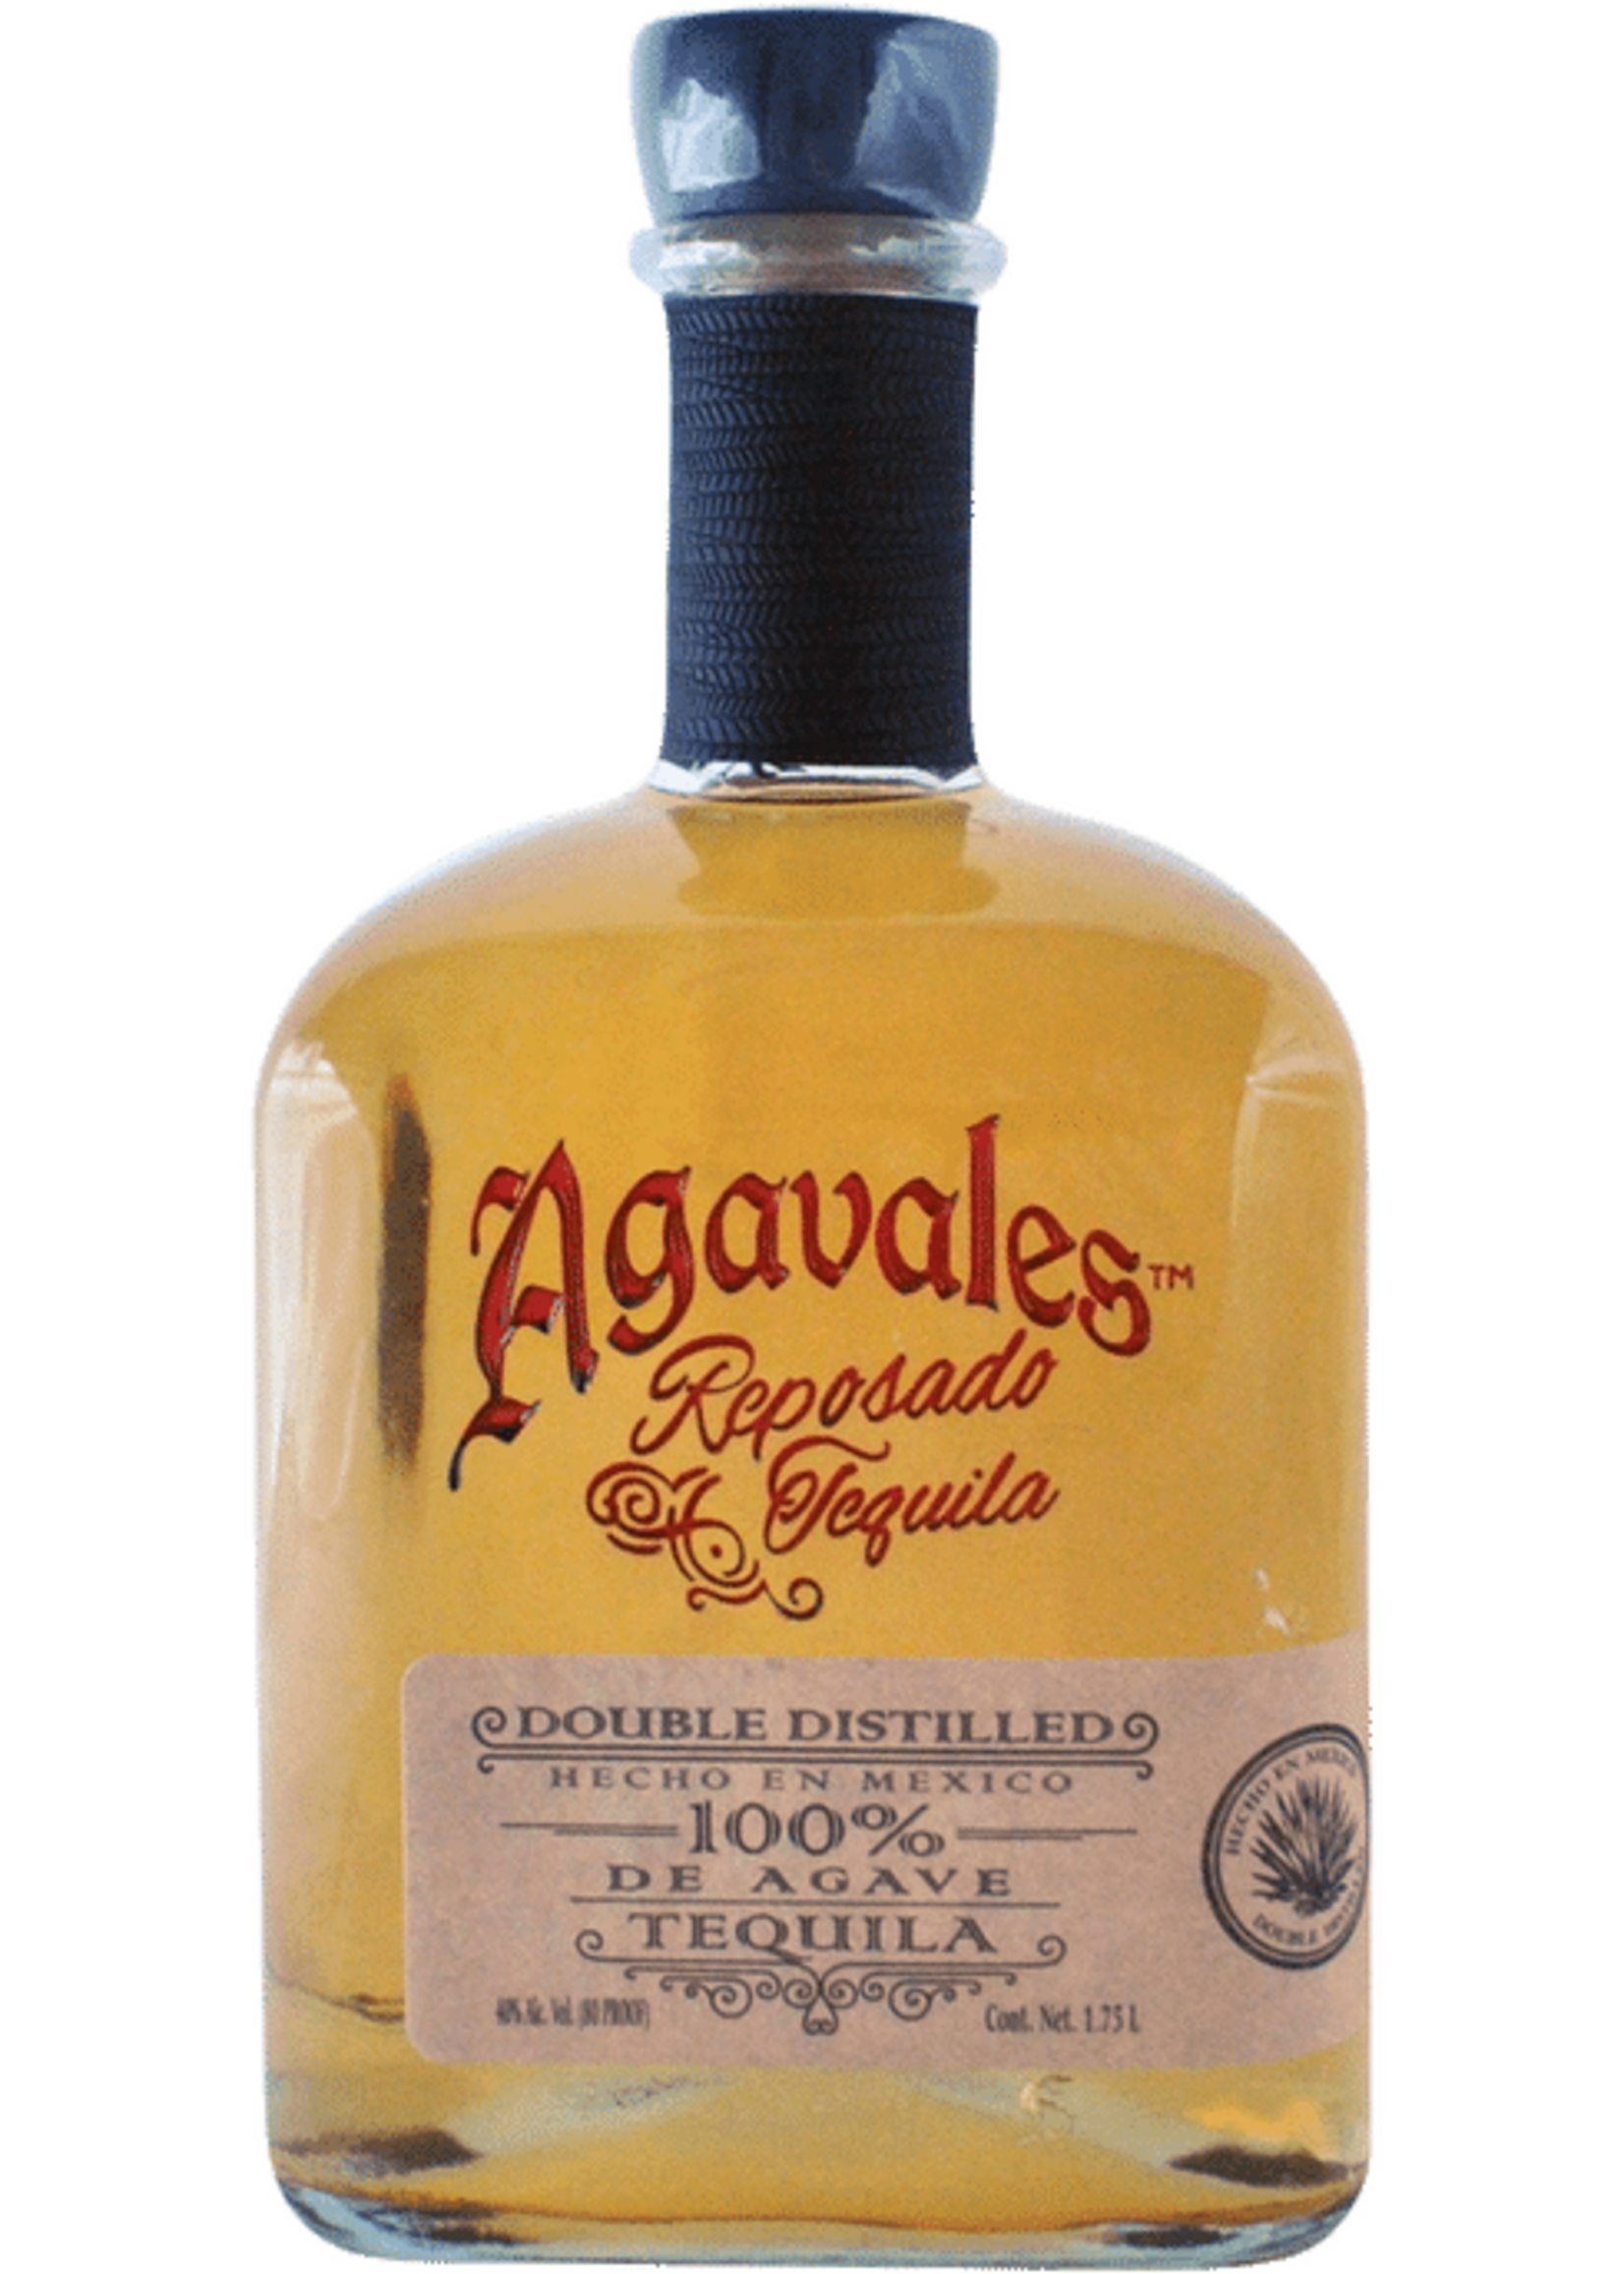 Agavales Premium Reposado Tequila 80Proof 750ml